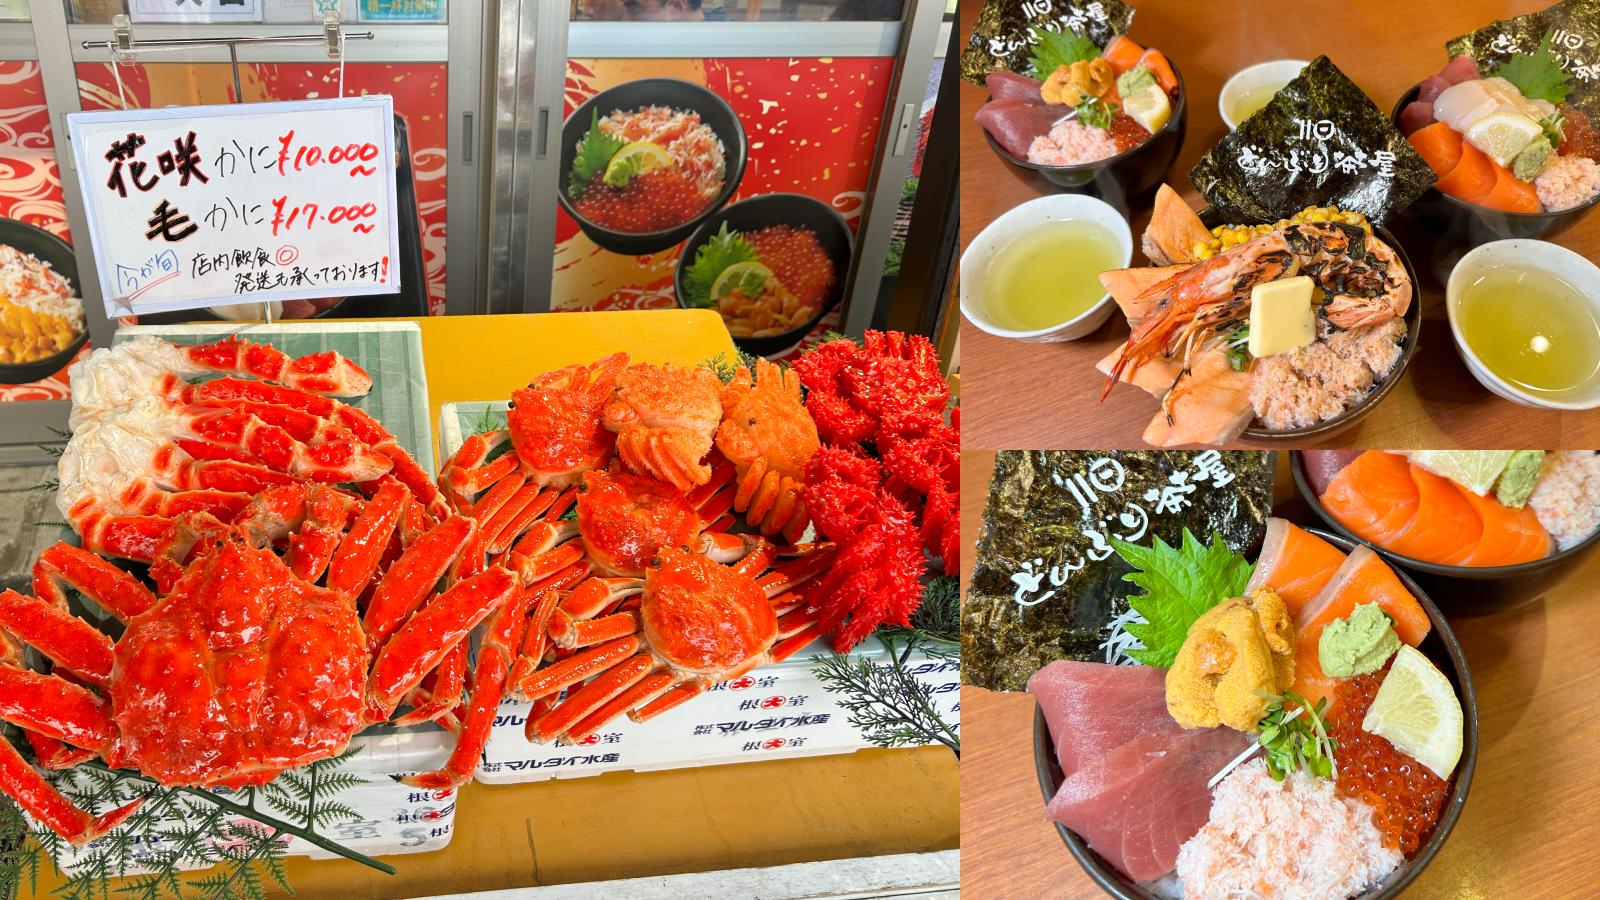 延伸閱讀：☆【北海道美食】二条市場海鮮吃免驚。市場內どんぶり茶屋Donburi Chaya在地人才知道，不用排隊就是爽！